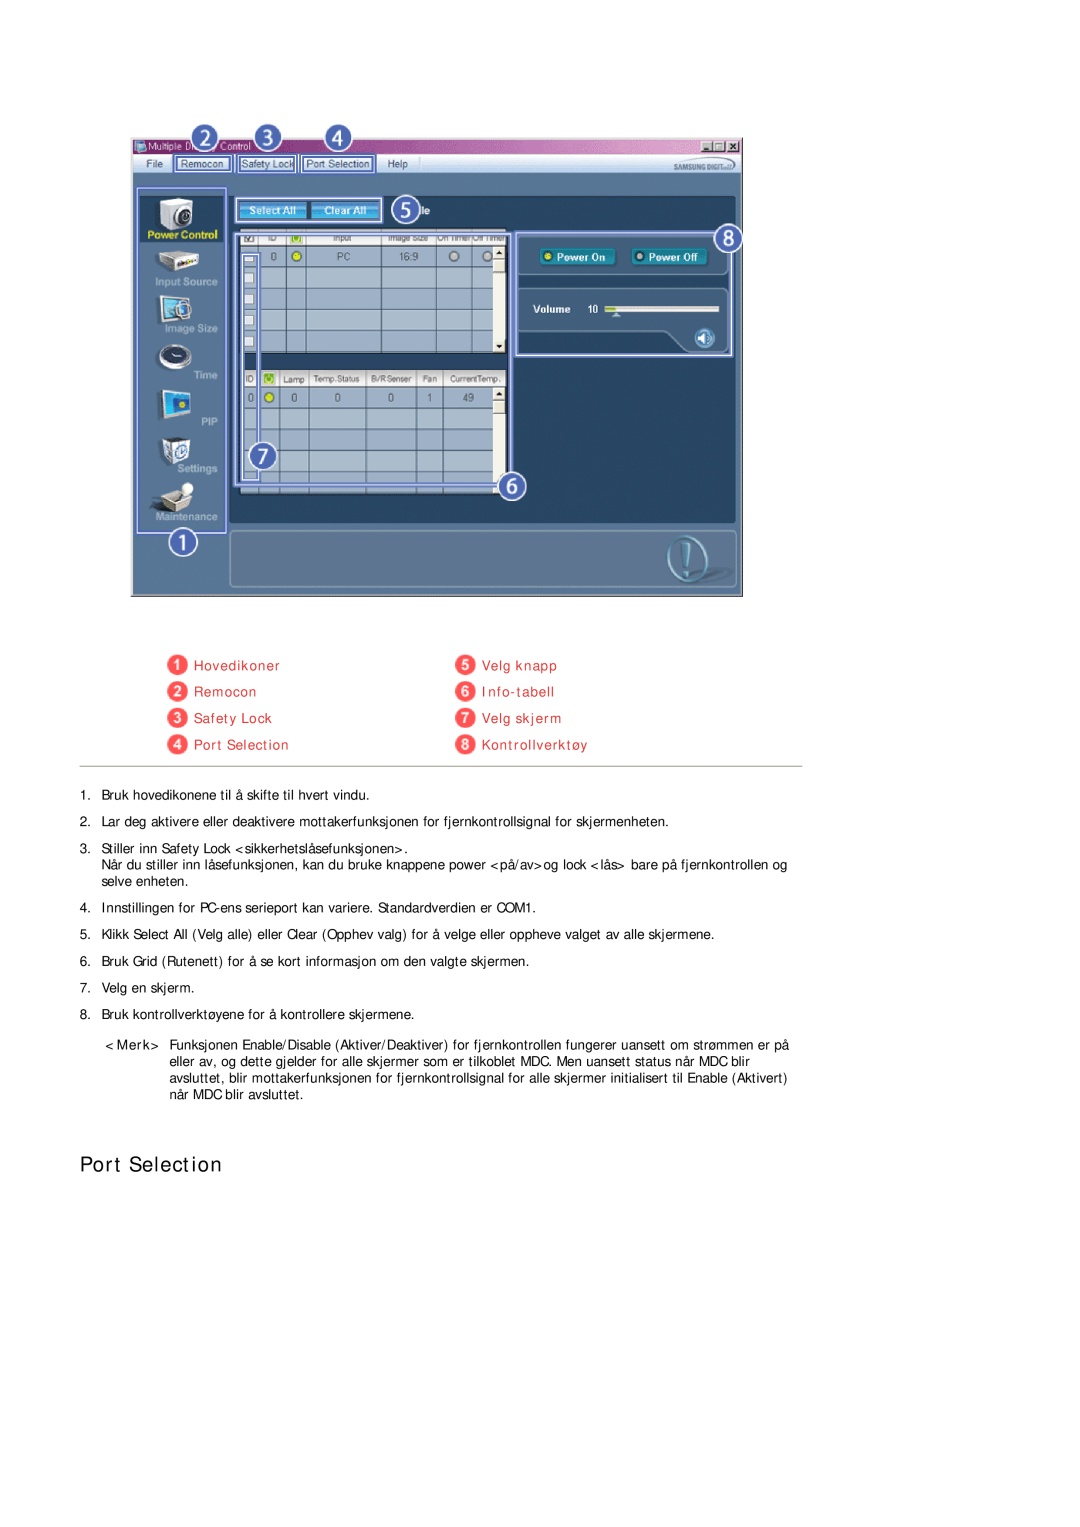 Samsung LH40TCUMBC/EN manual Port Selection, Hovedikoner, Velg knapp, Remocon, Info-tabell, Safety Lock, Velg skjerm 